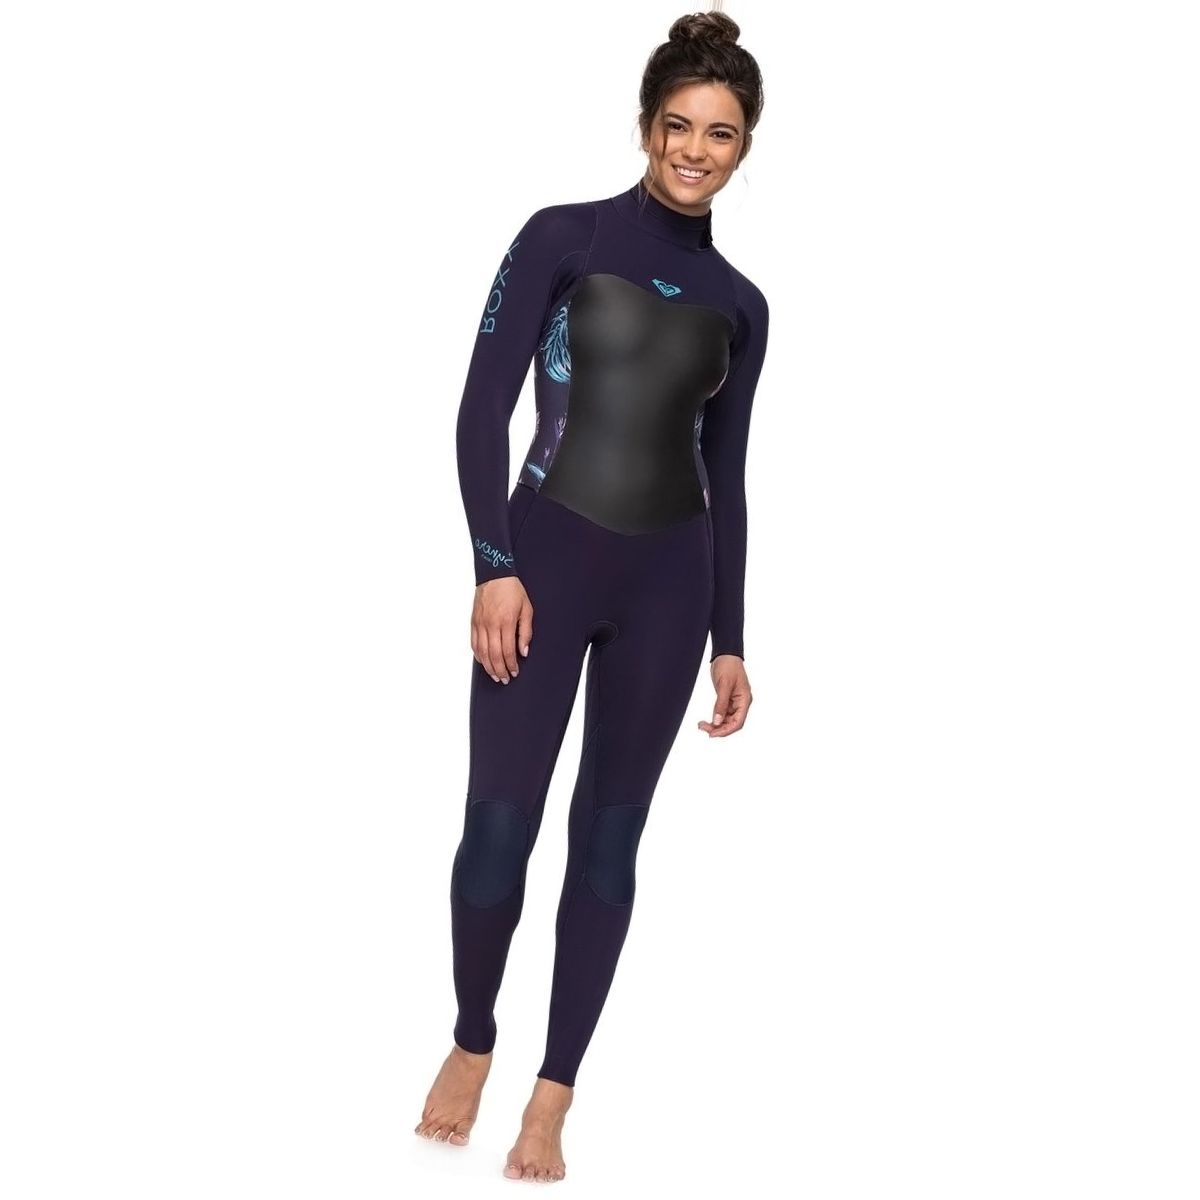 Roxy 4/3 Syncro Back Zip GBS Wetsuit - Women's